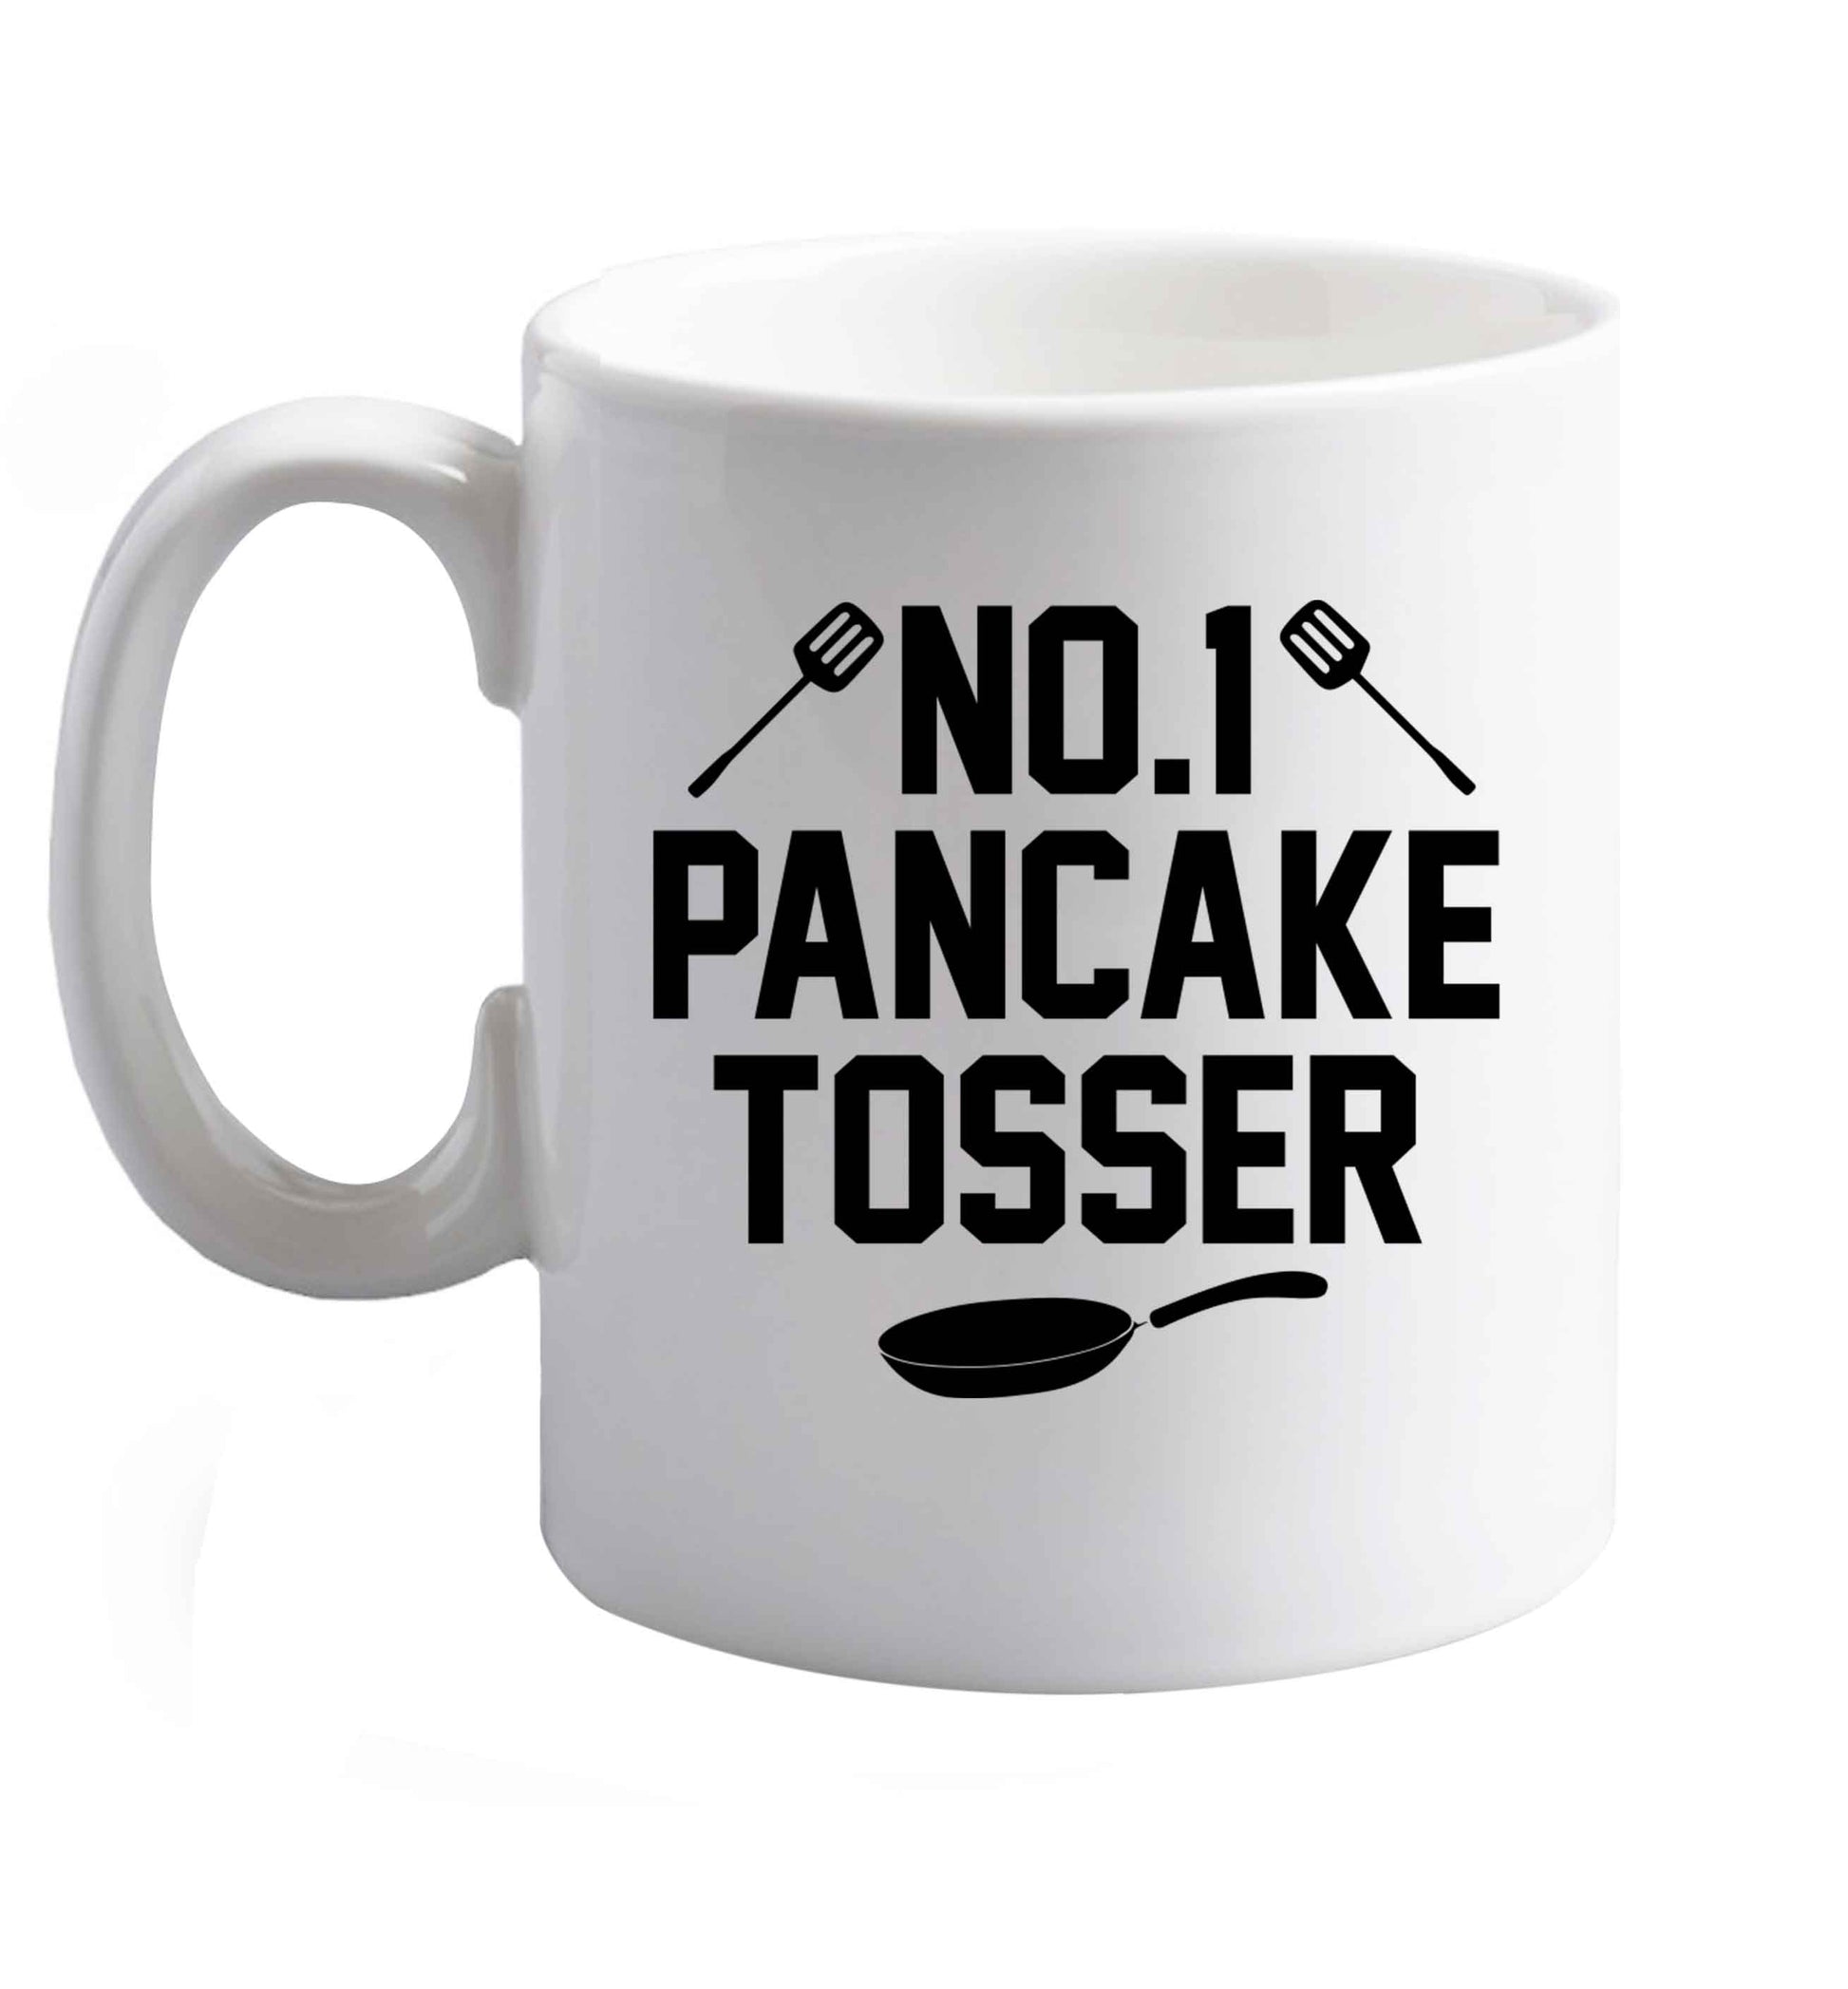 10 oz No.1 Pancake Tosser ceramic mug right handed